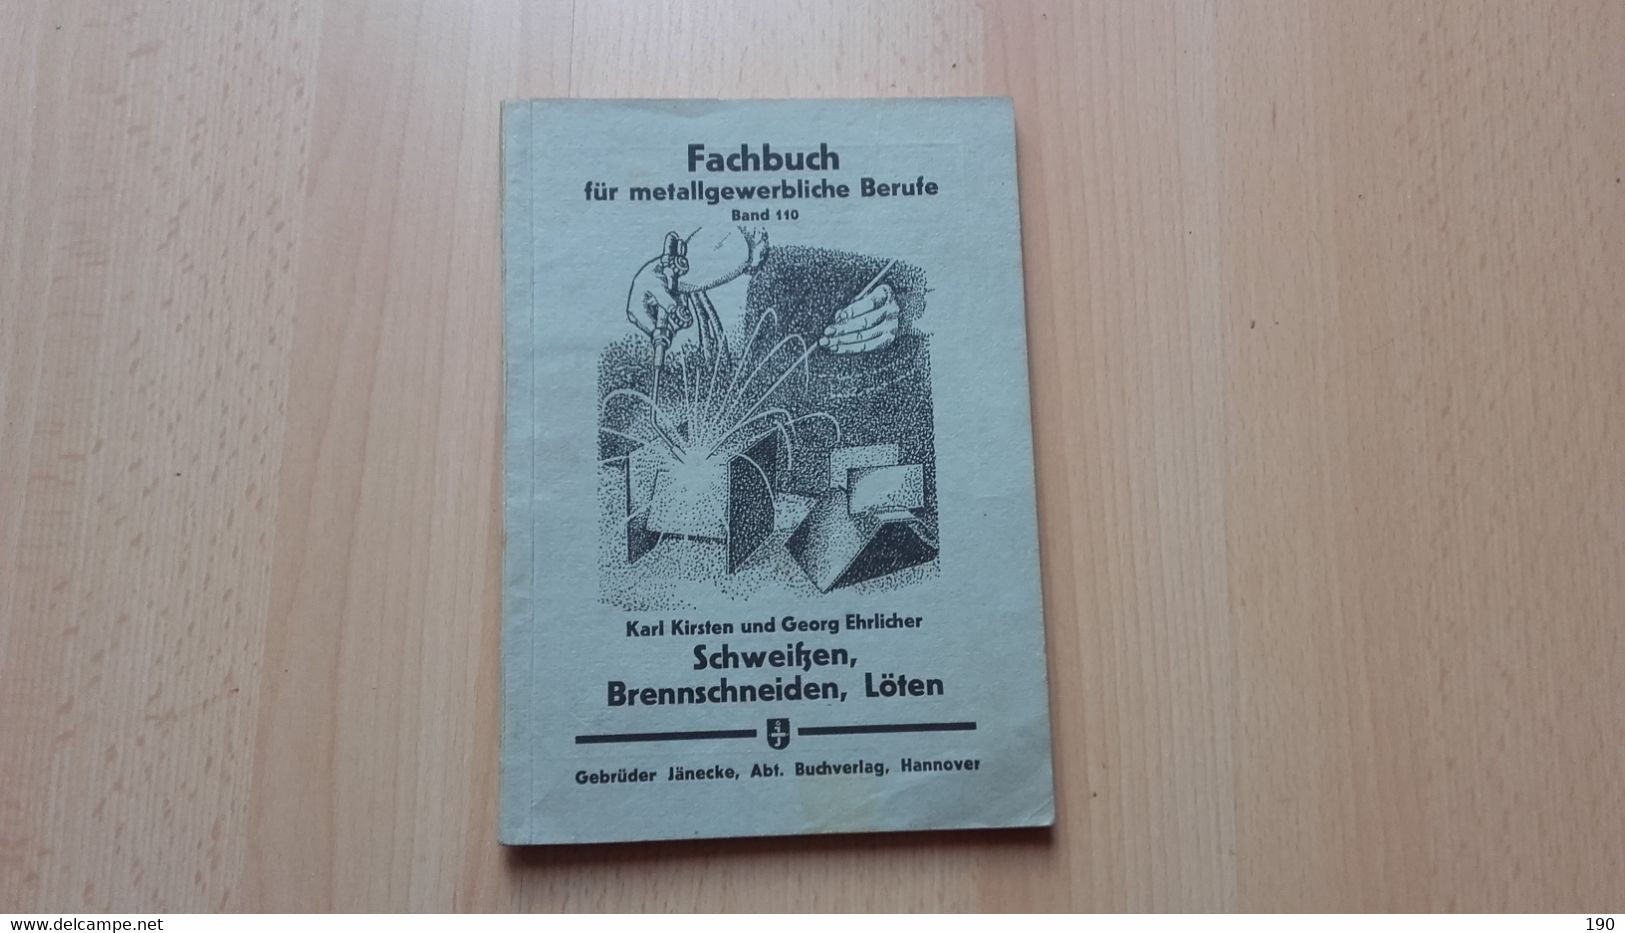 Fachbuch Fur Metallgewerbliche Berufe.Band 110.Karl Kirsten/Georg Ehrlicher:Schweitzen,Brennschneiden,Loten - Technical